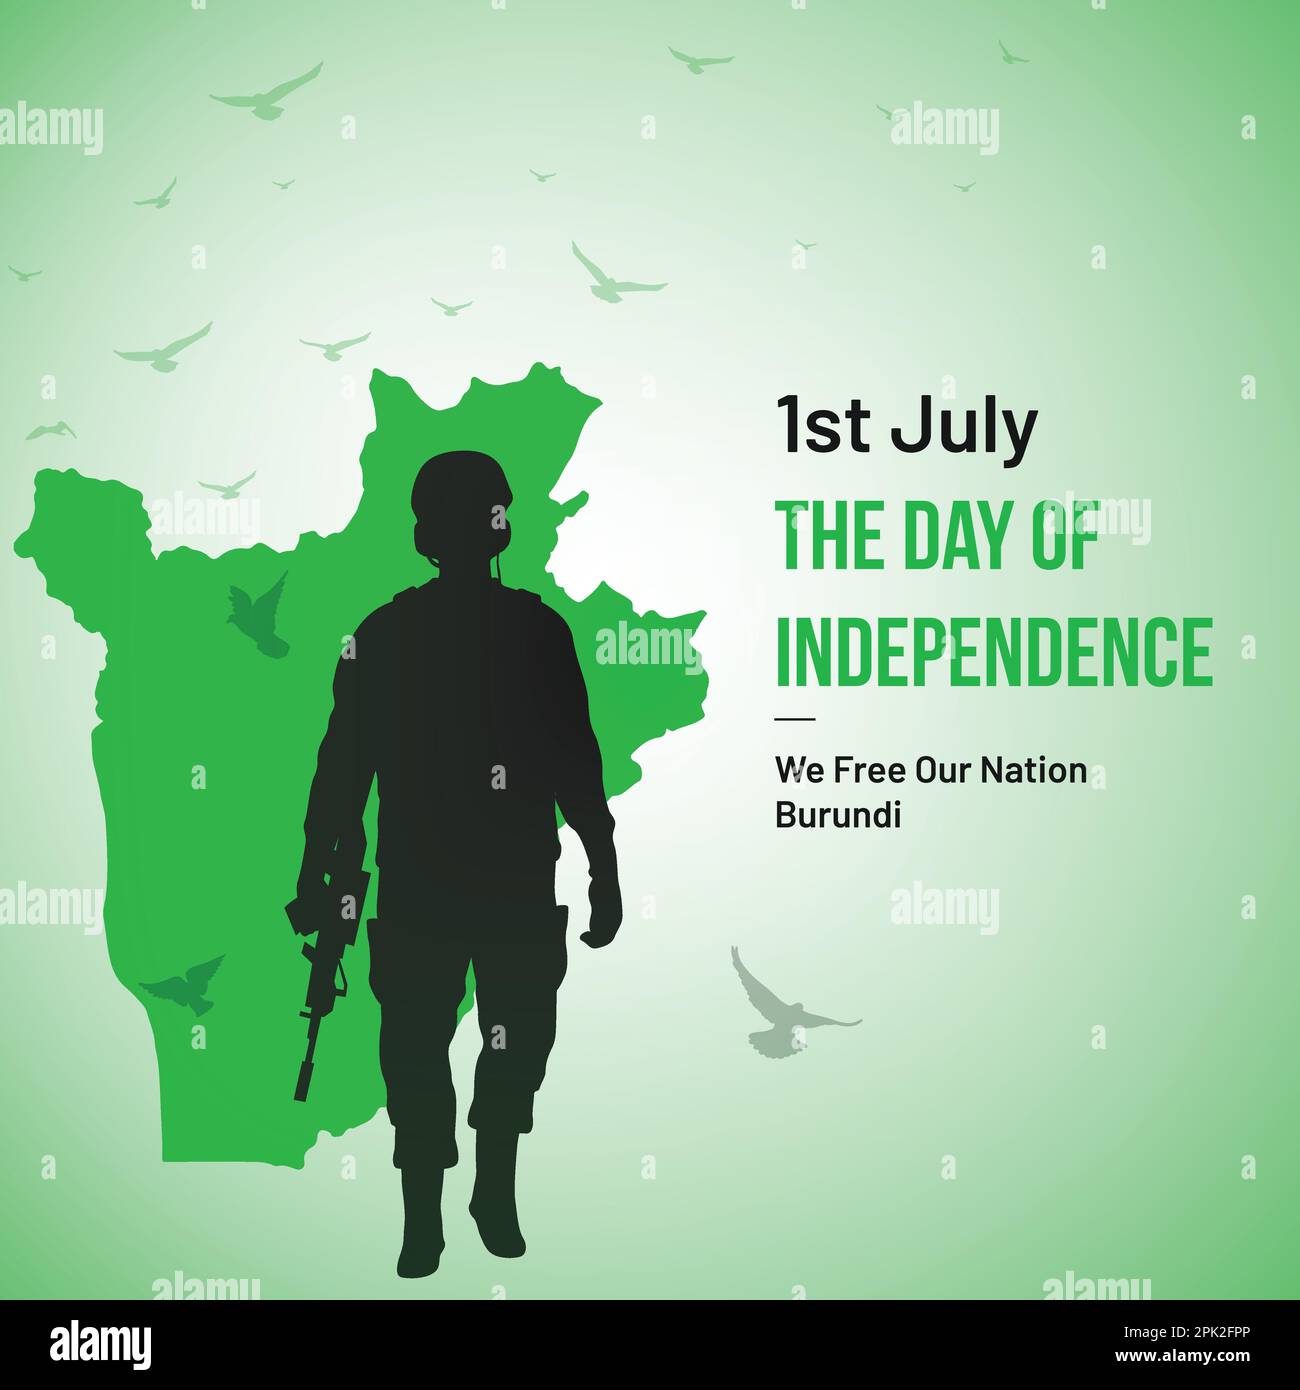 Burundi Independence Day Vector Design. 1st luglio Giornata Nazionale delle Feste Burundese sfondo con elementi di colore nazionale, mappa, esercito, piccione. Illustrazione Vettoriale